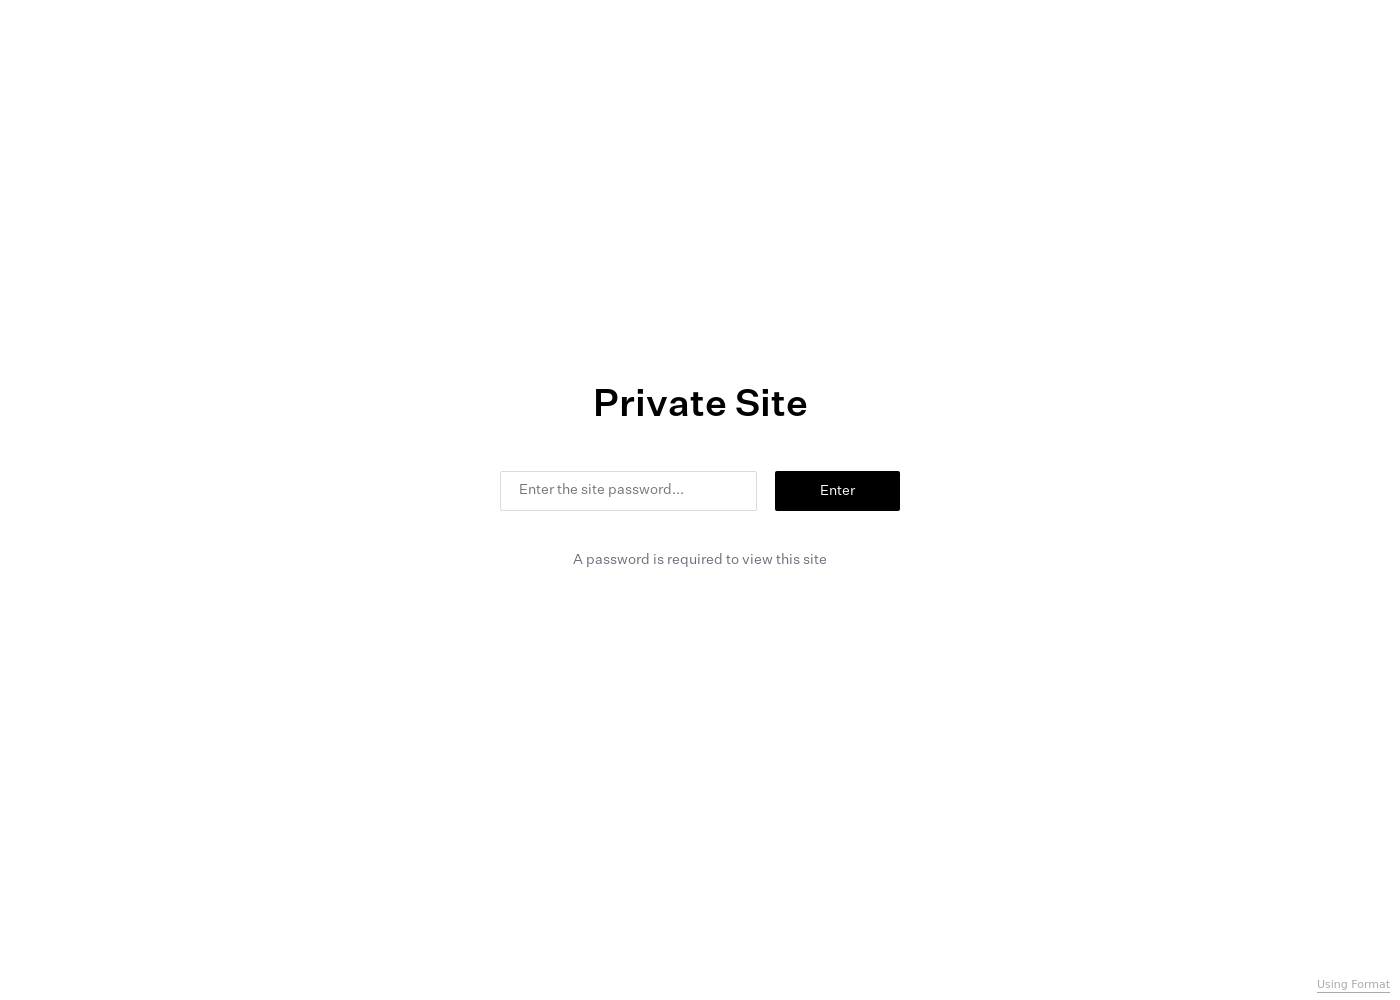 Captura de pantalla de un sitio web con foray